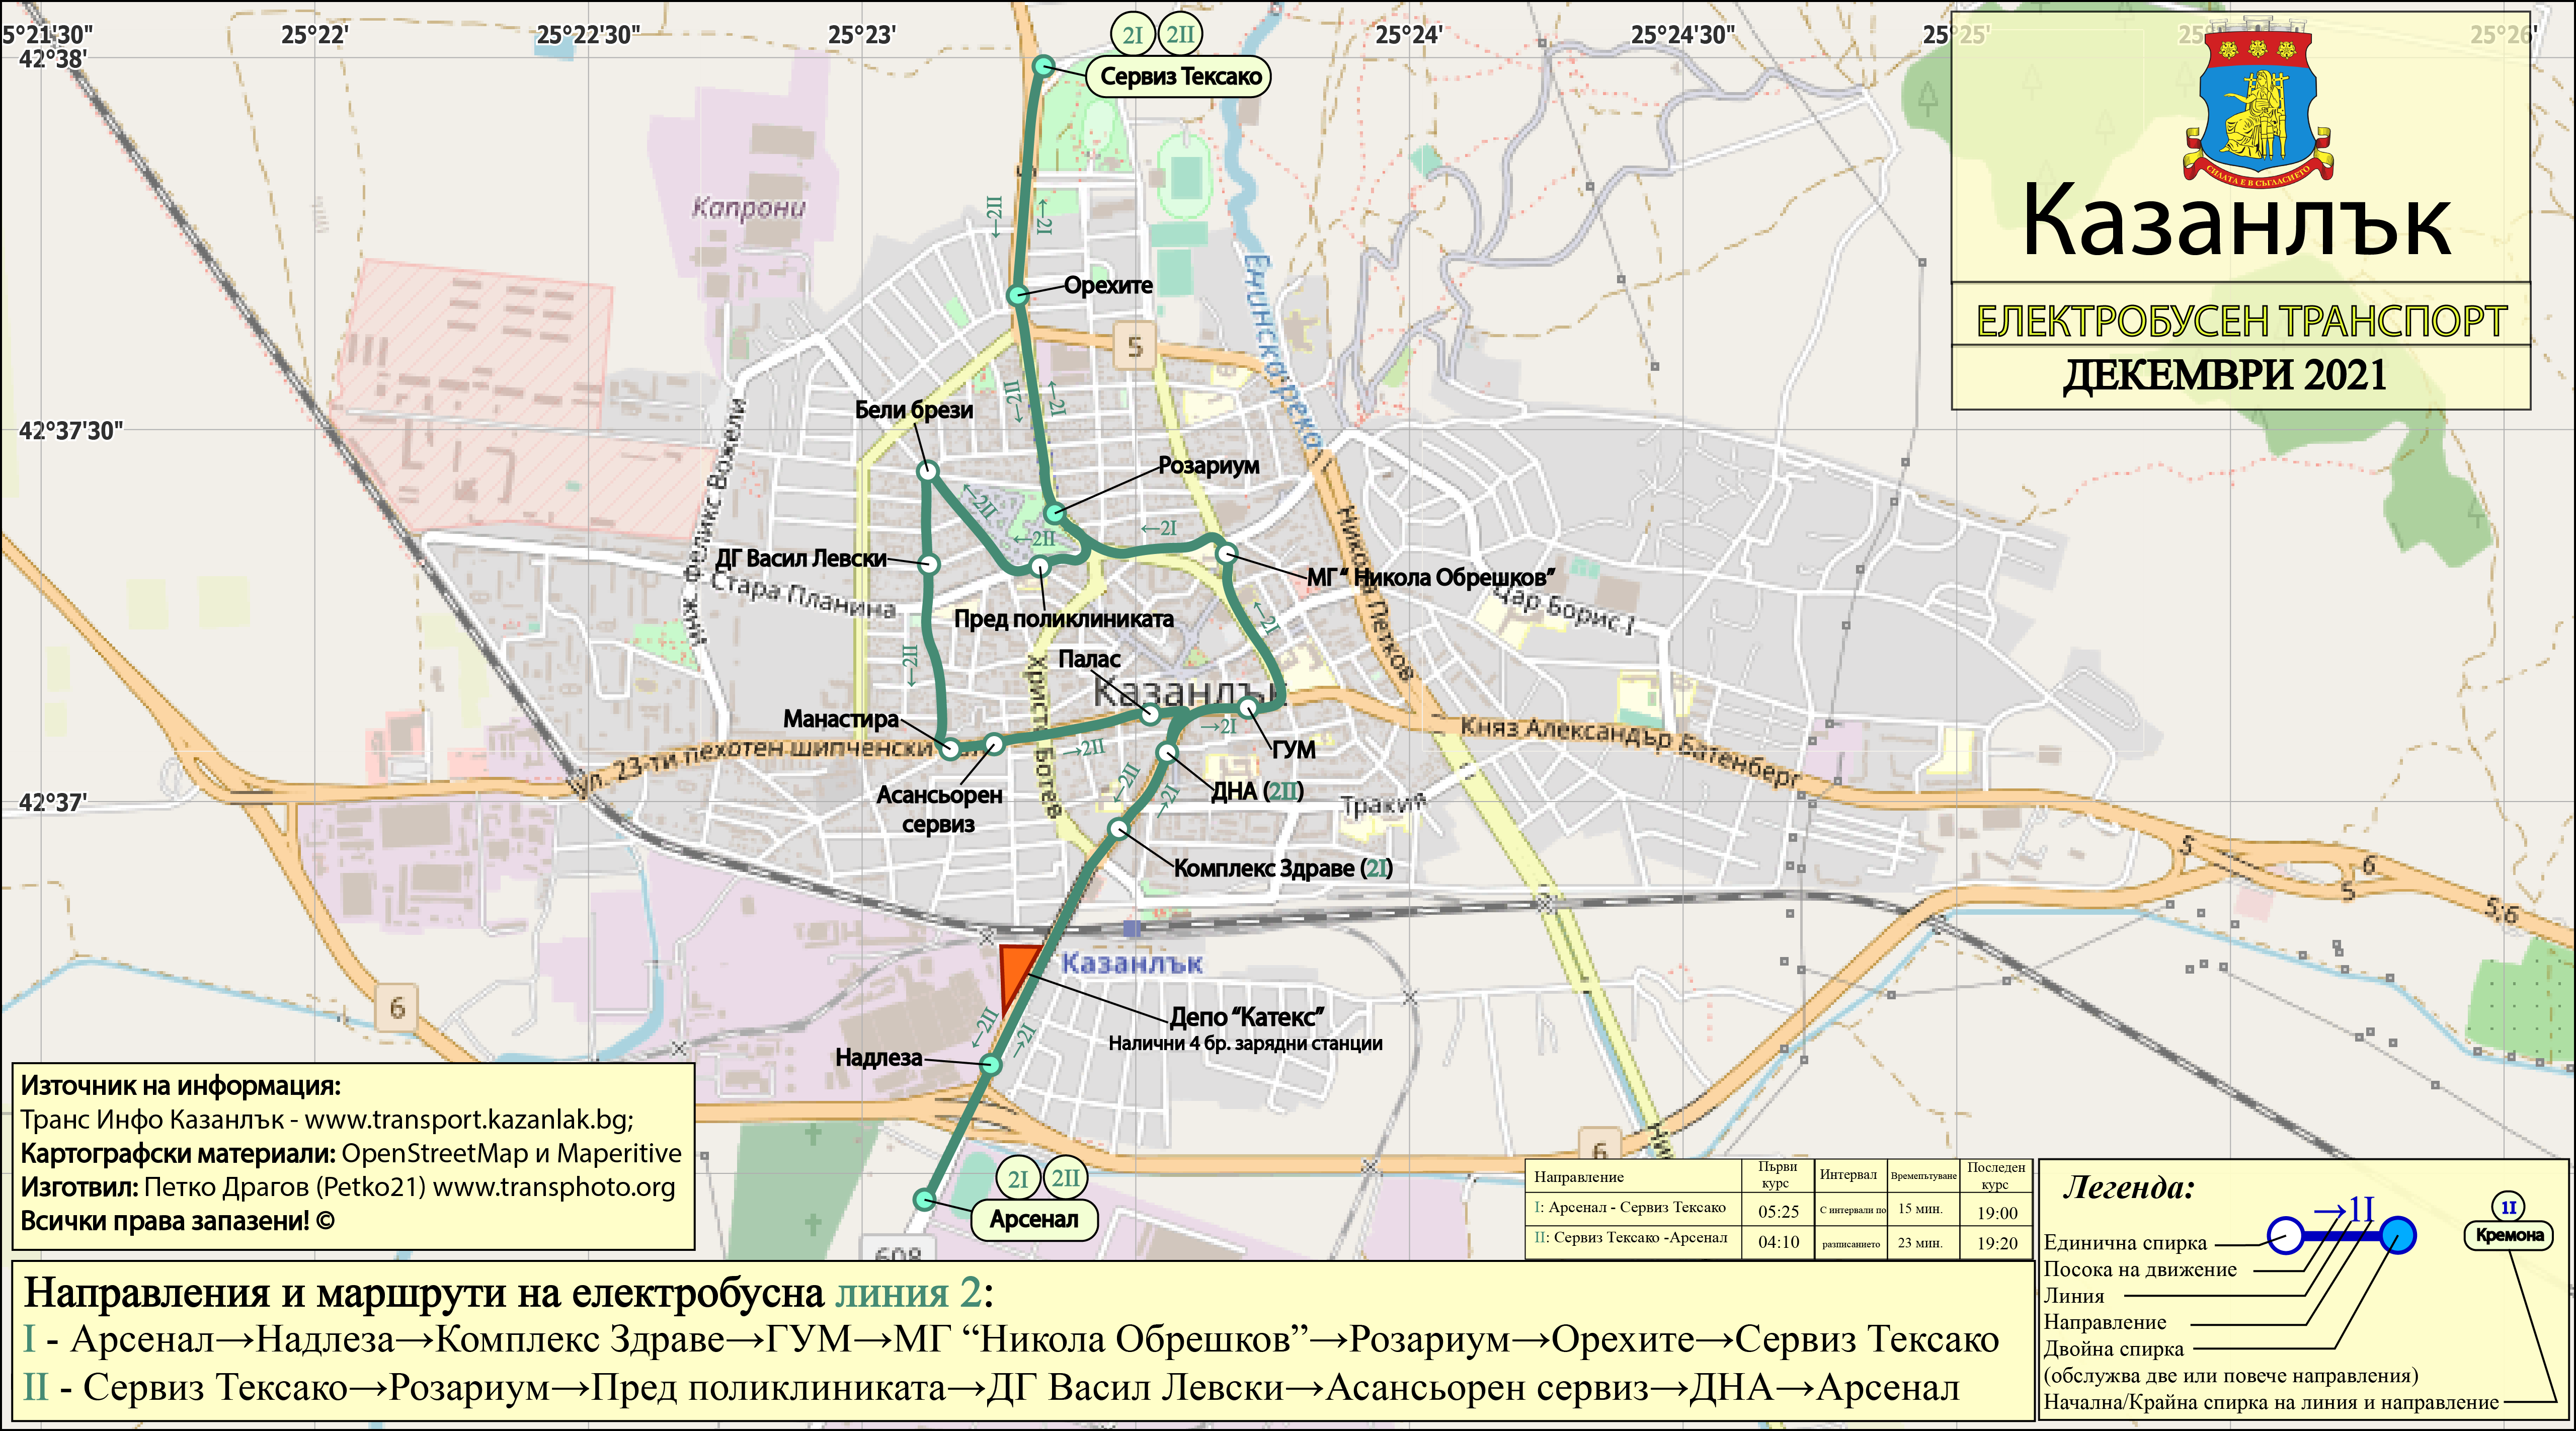 Казанлык — Карти и схеми на електробусни маршрути; Карты, созданные с использованием OpenStreetMap